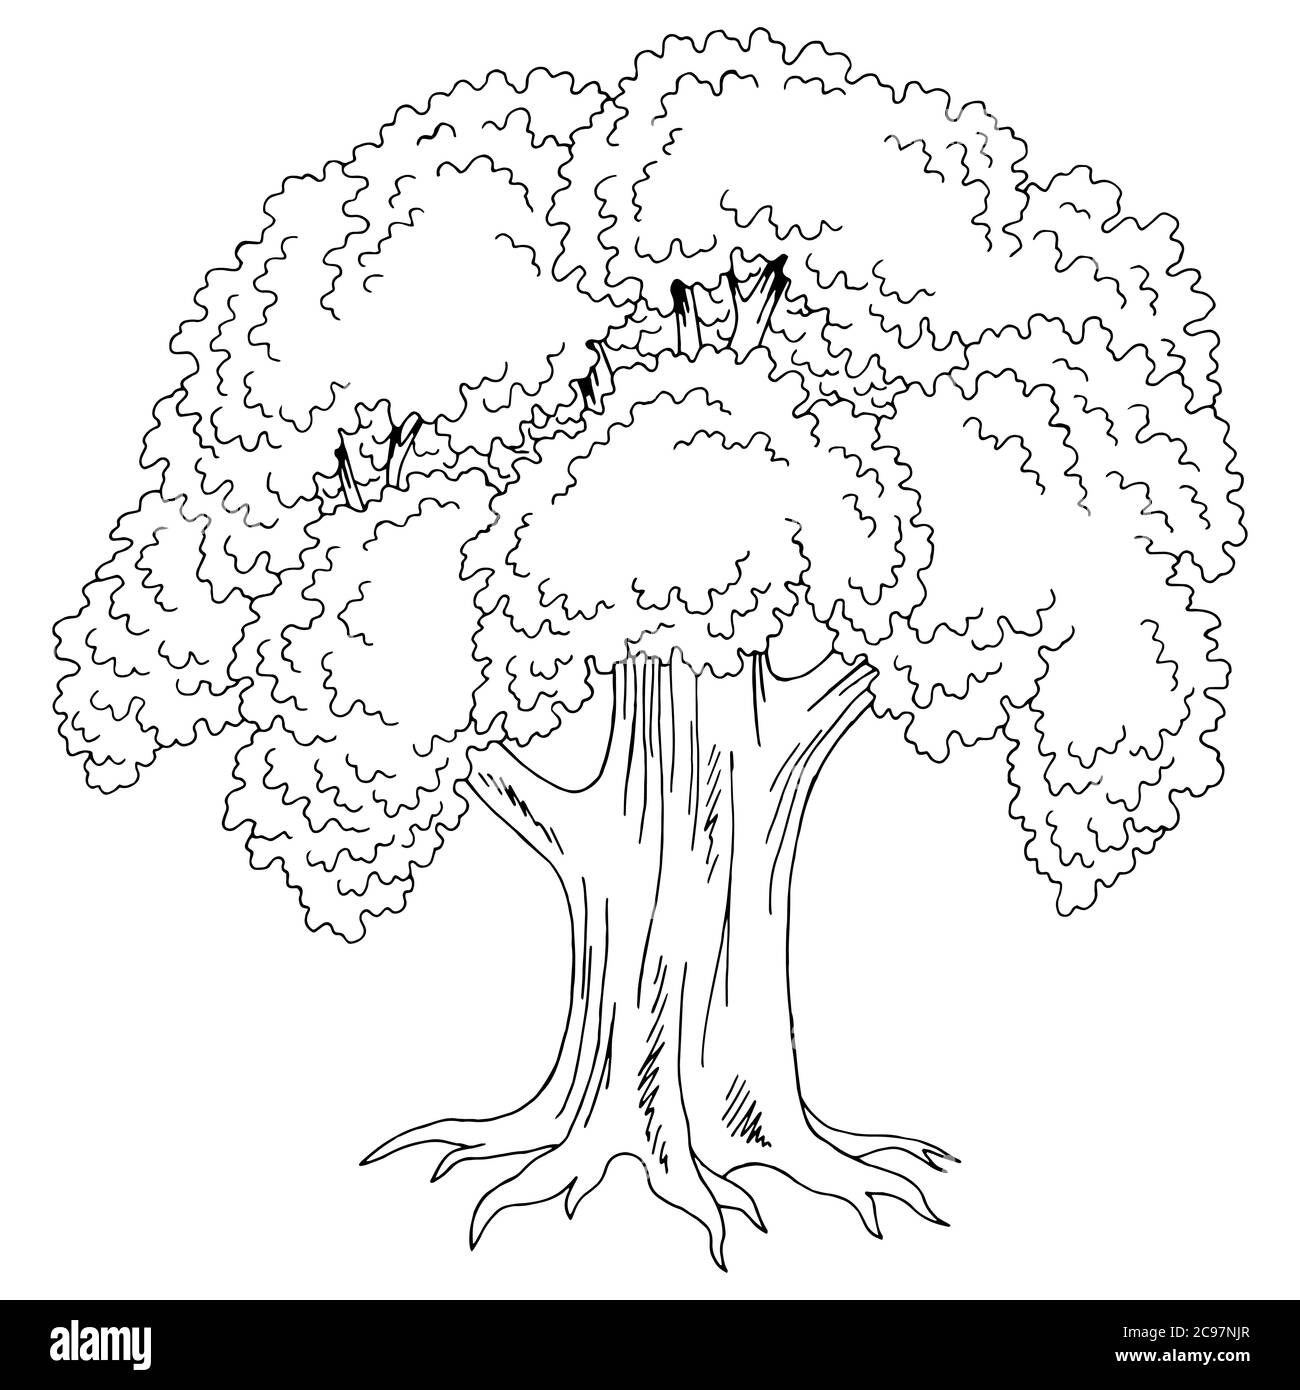 Alte Eiche Baum Grafik schwarz weiß isoliert Skizze Illustration Vektor Stock Vektor